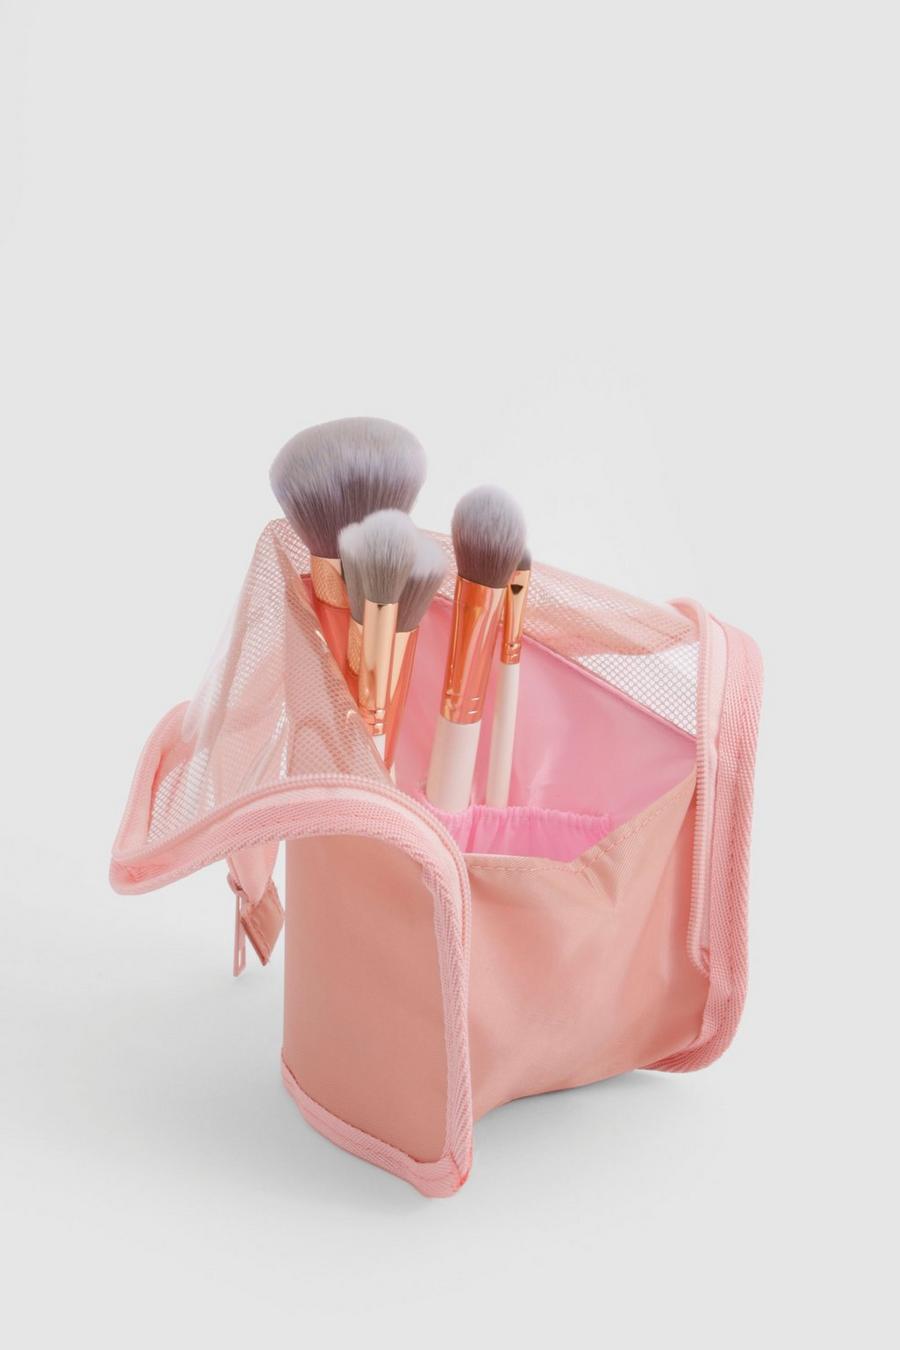 Pink Makeup Brush Travel Organiser 